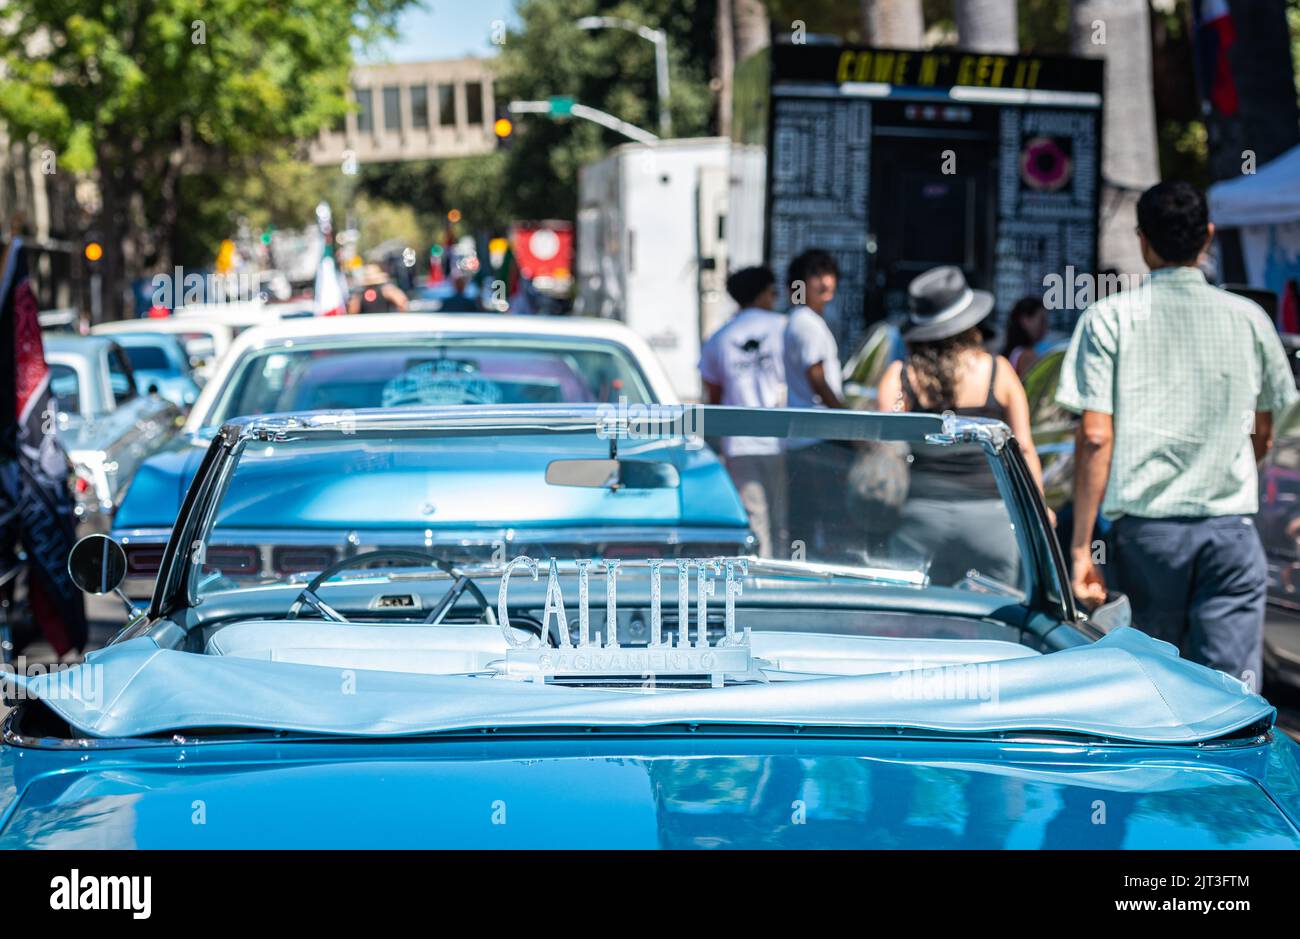 Les gens marchent devant une voiture classique bleue « lowrider » avec un panneau Cali Life au capitole de l'État dans le cadre d'une marche de l'UFW autour des droits des ouvriers agricoles. Banque D'Images